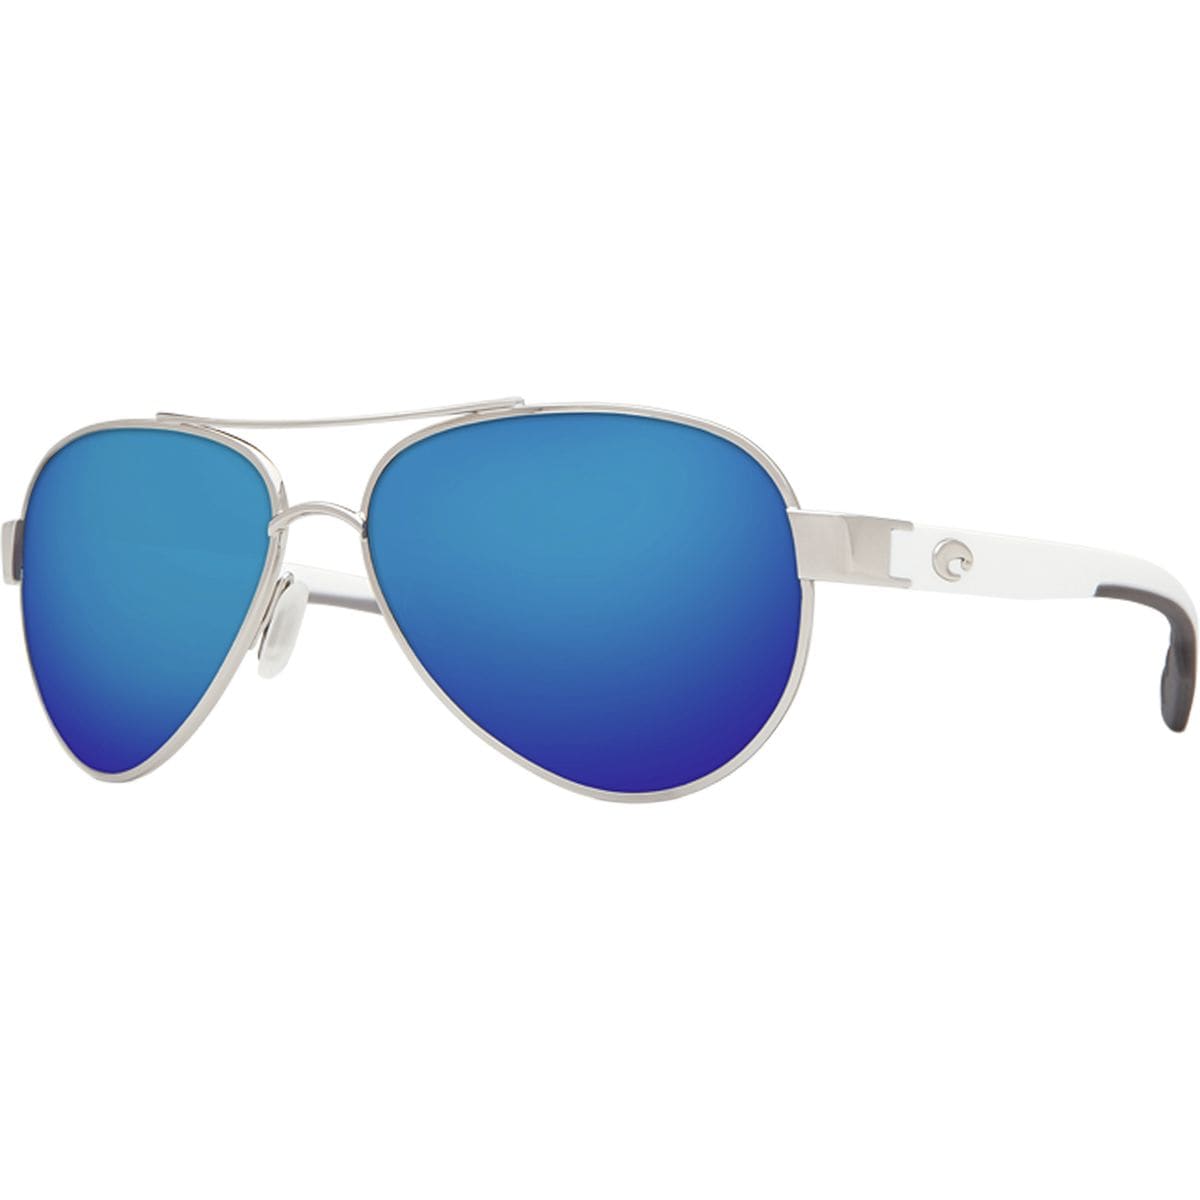 Costa Loreto 580P Polarized Sunglasses